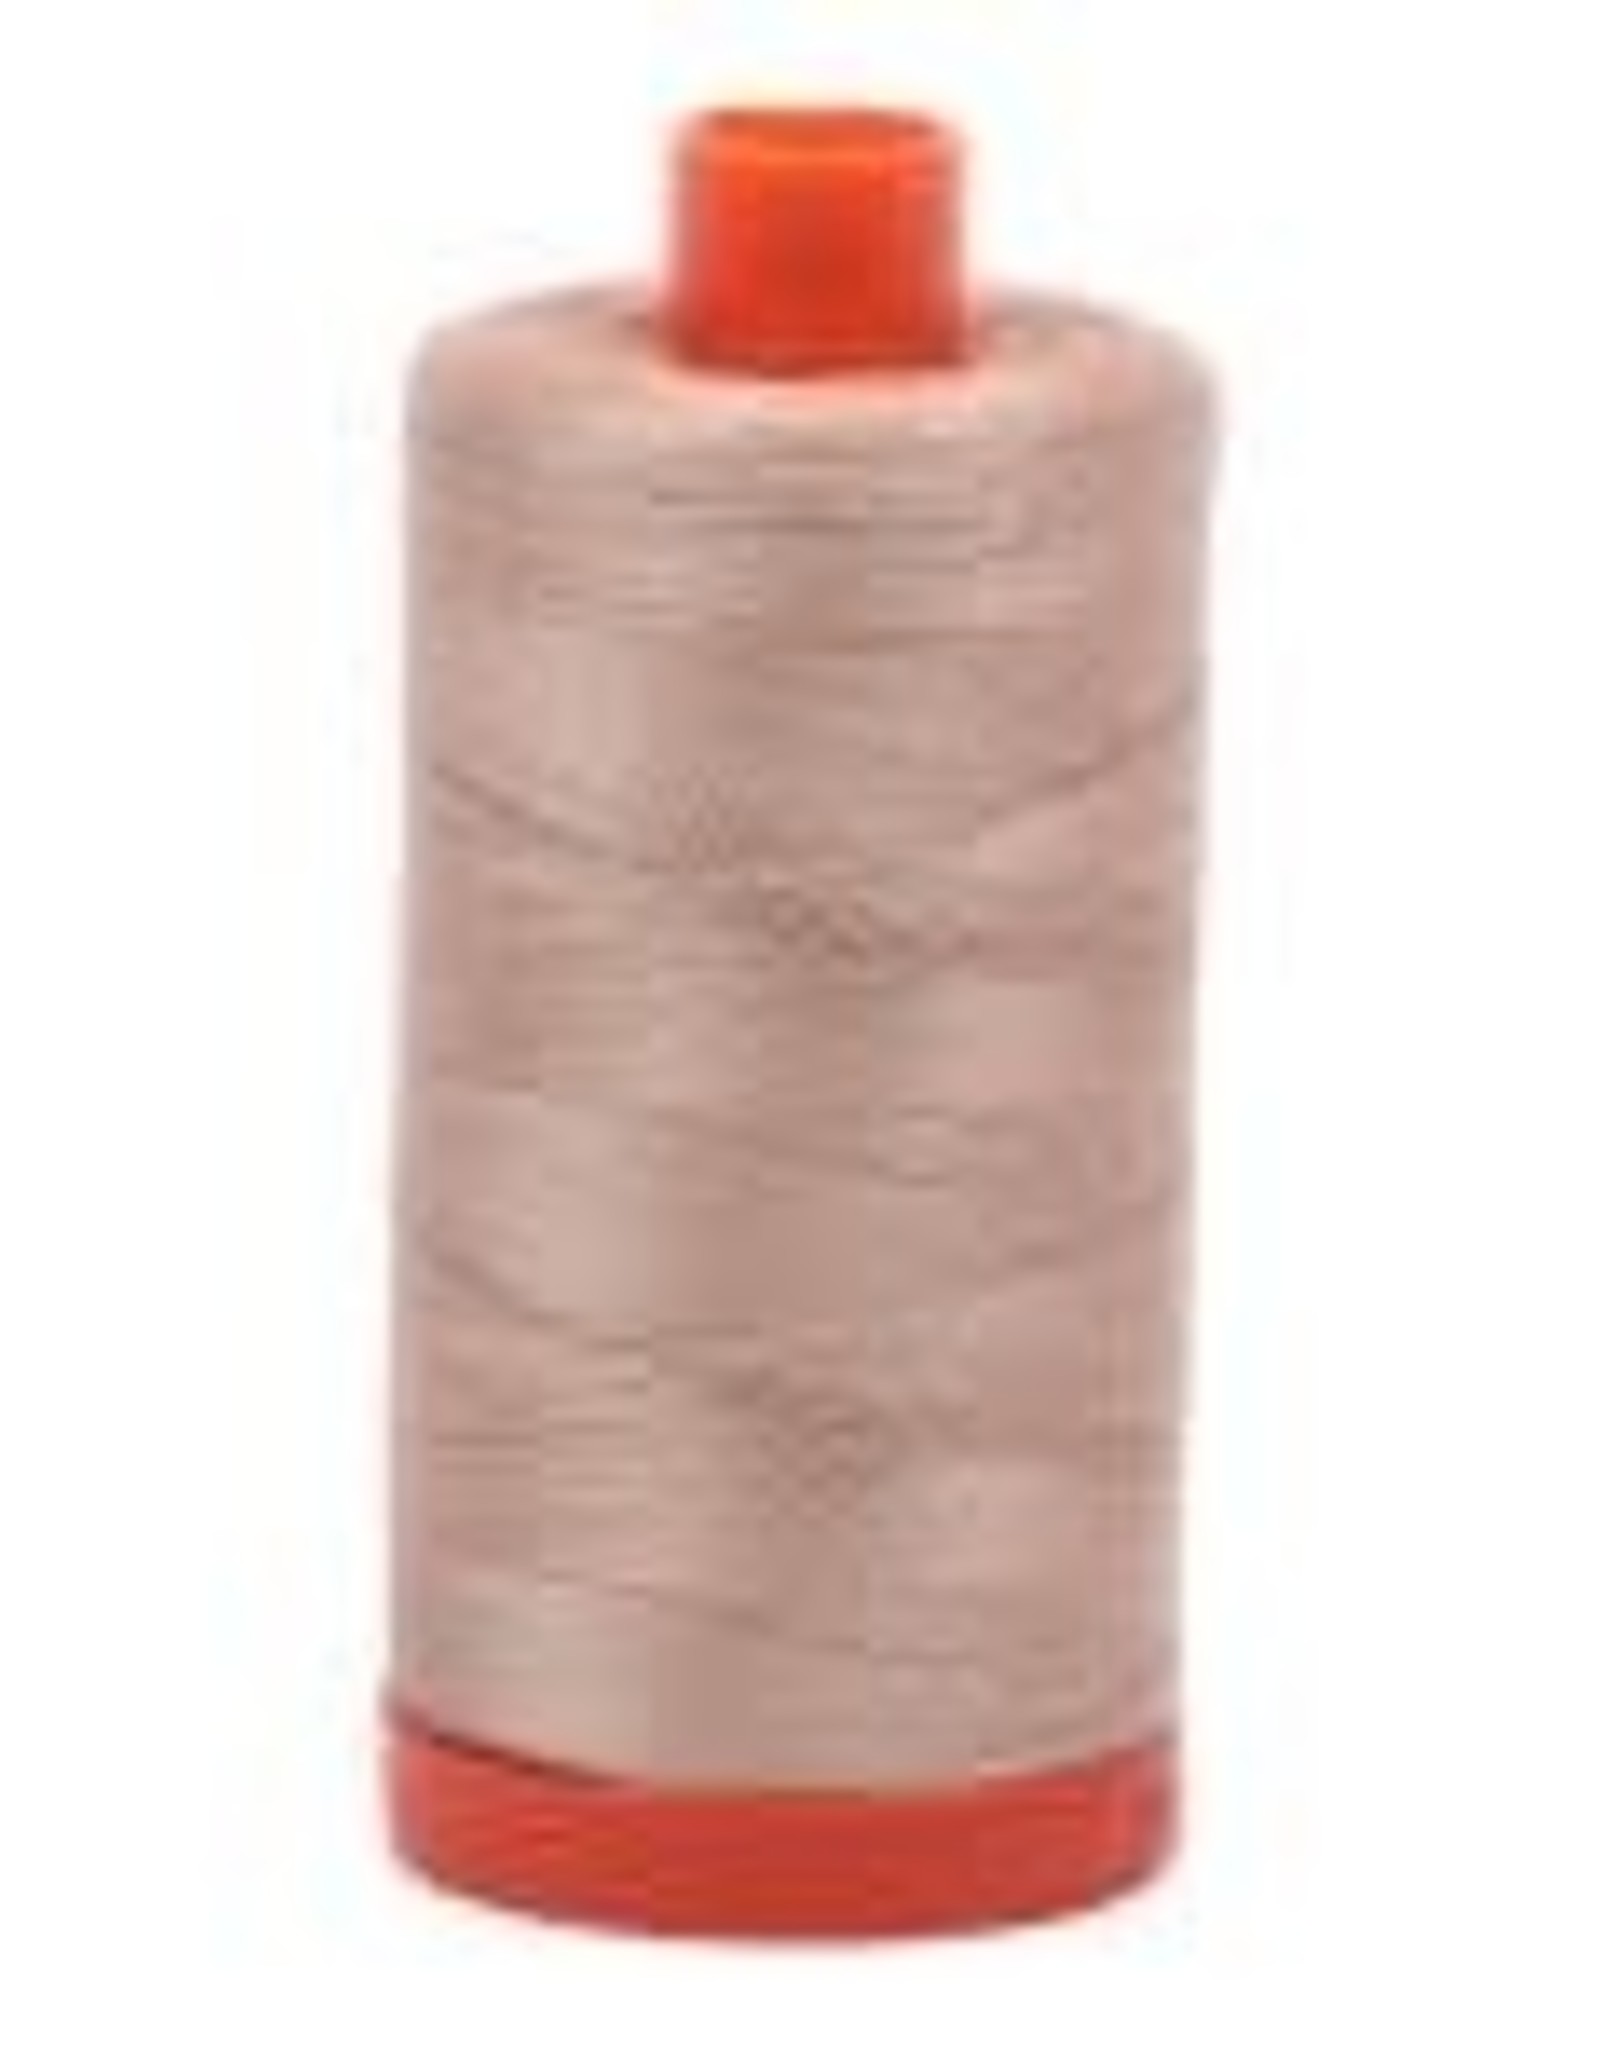 Mako Cotton Thread Solid 50wt -  Beige (2314)